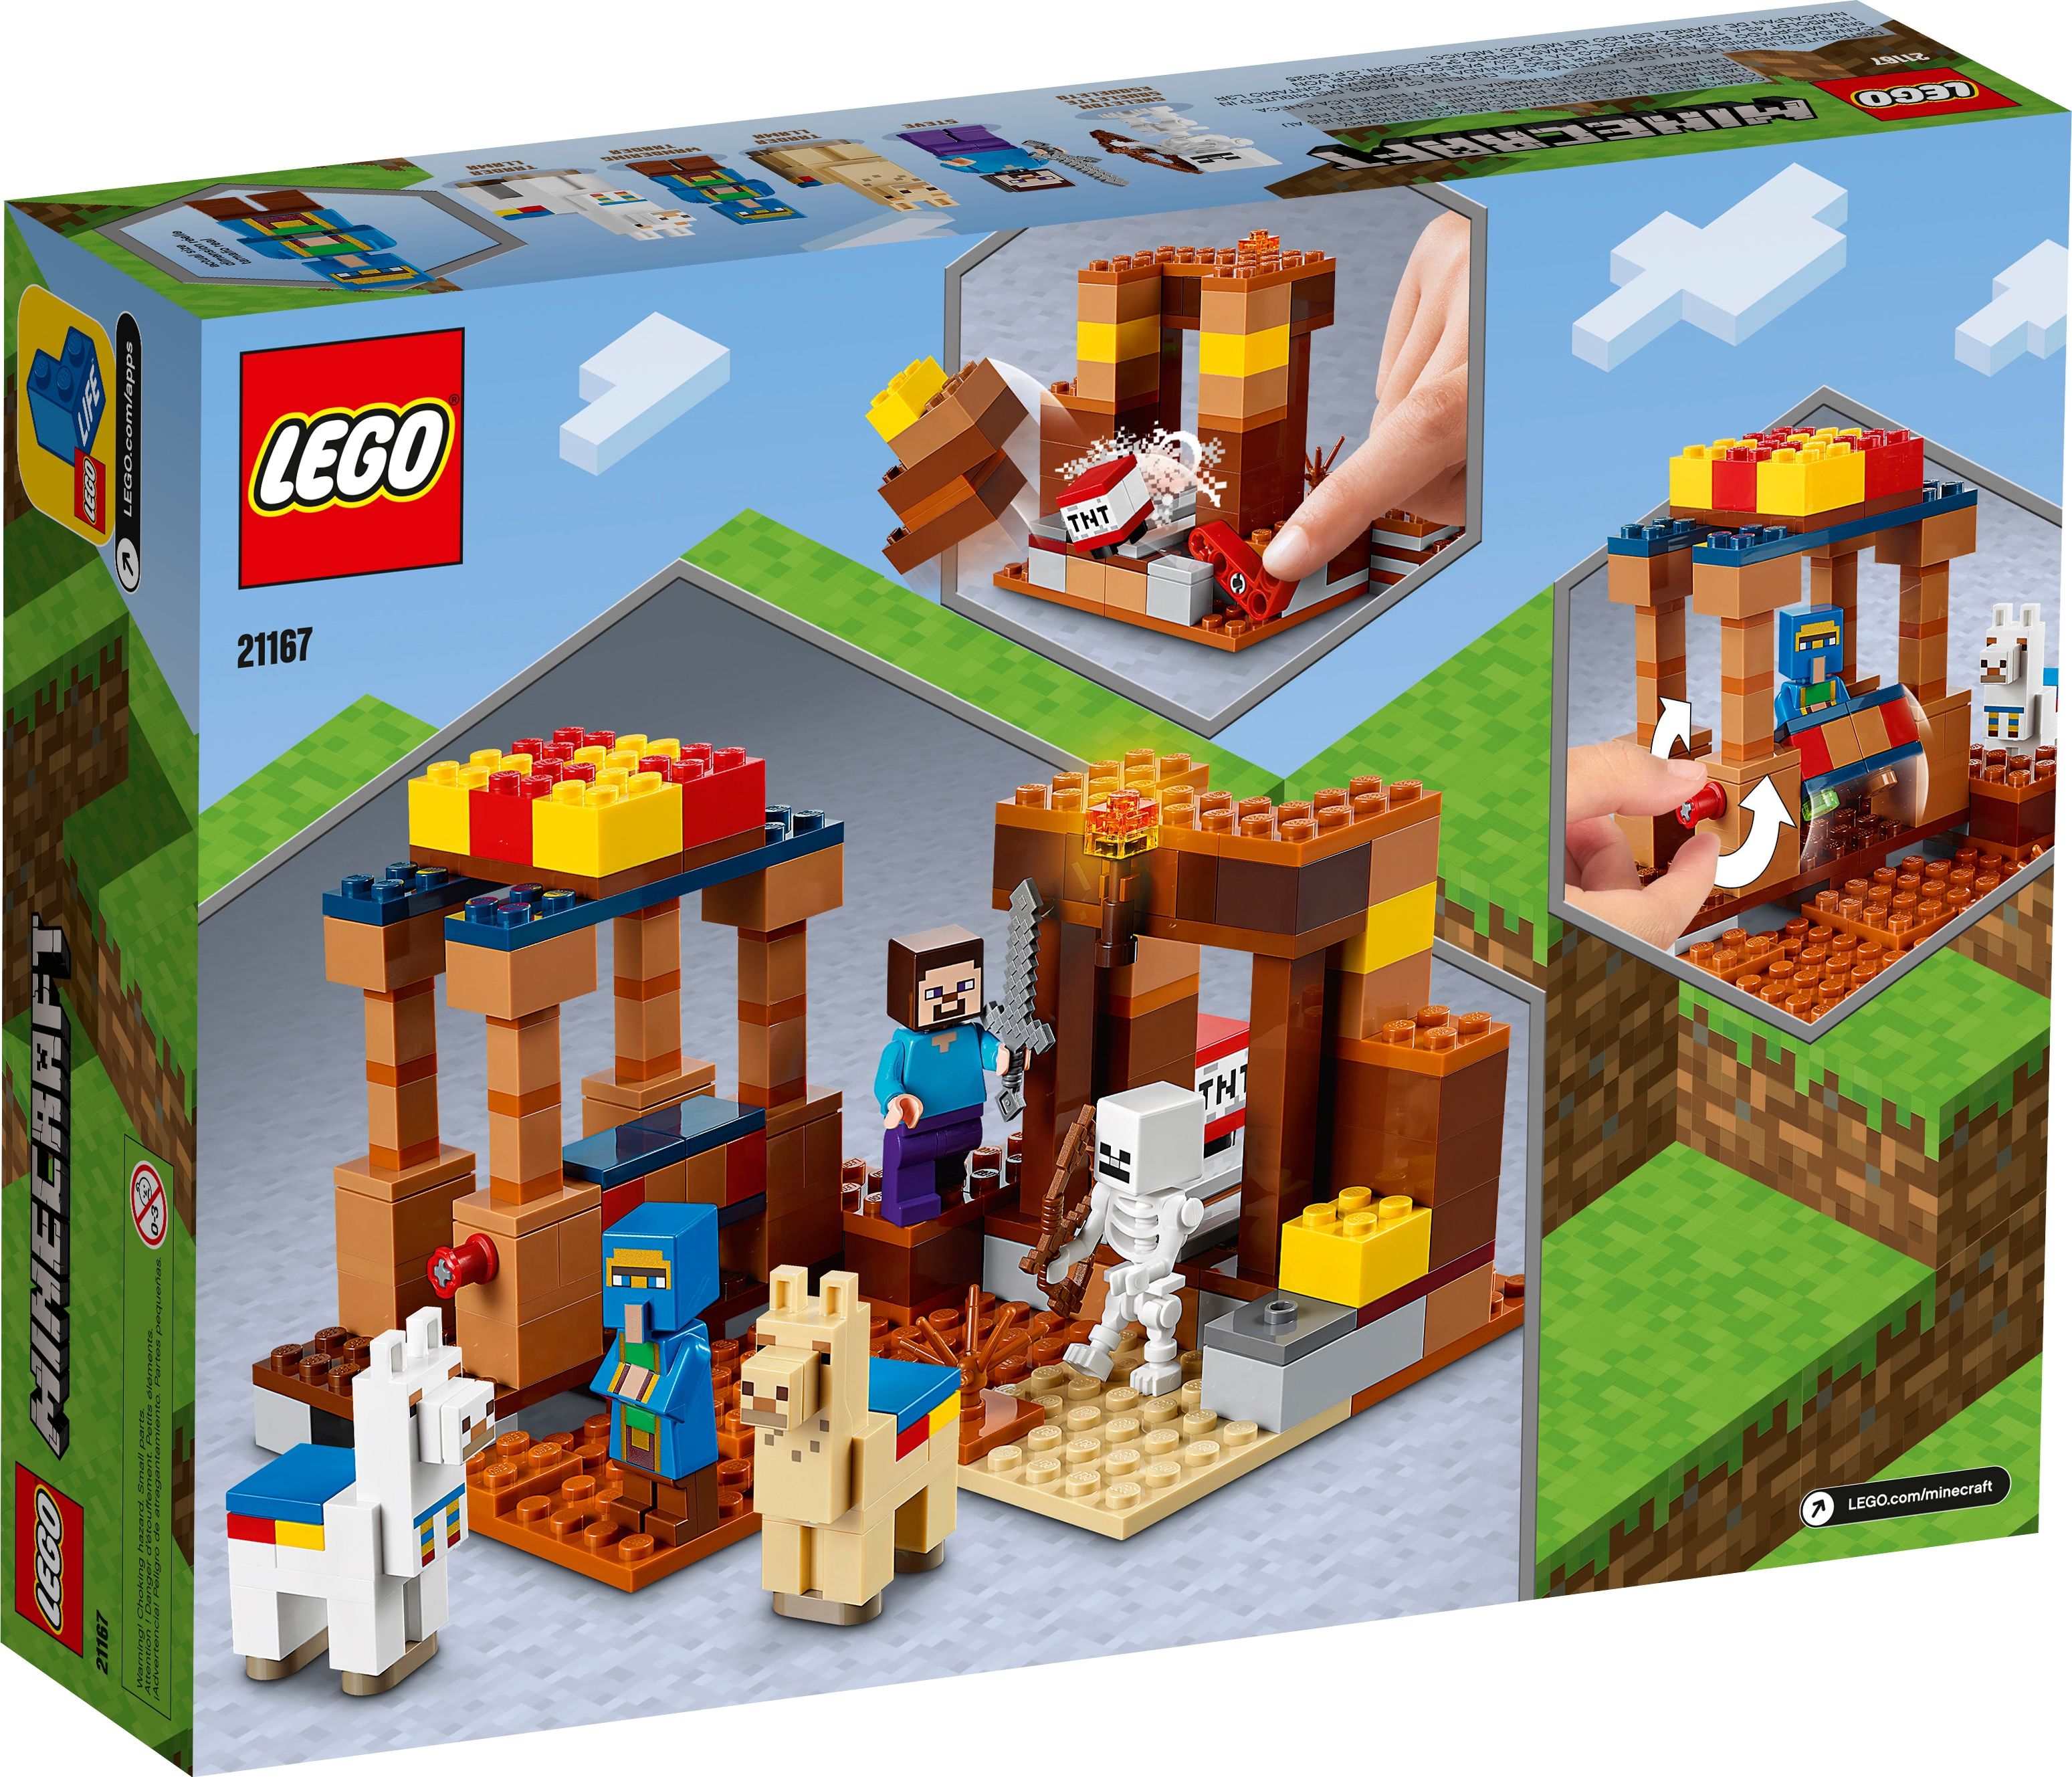 LEGO Minecraft 21167 Der Handelsplatz LEGO_21167_alt7.jpg